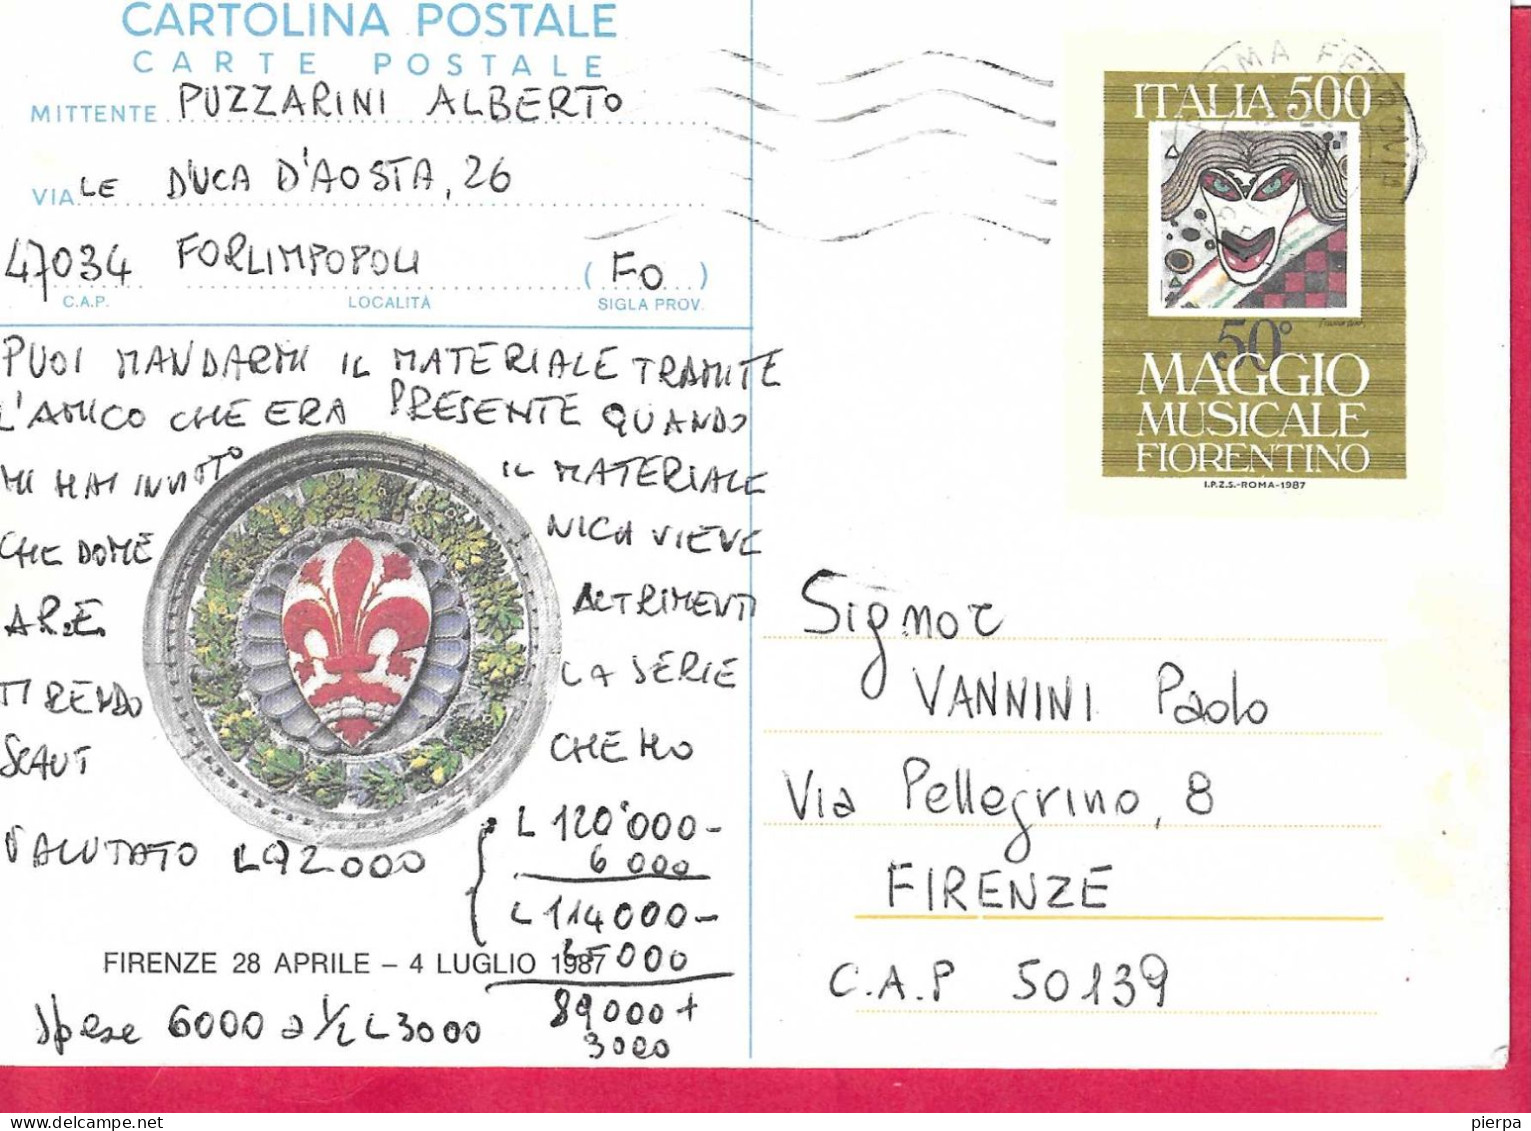 INTERO CARTOLINA POSTALE MAGGIO MUSICALE FIORENTINO(INT. 209) VIAGGIATA DA PARMA FERRROVIA*23.5.87* PER FIRENZE - Stamped Stationery